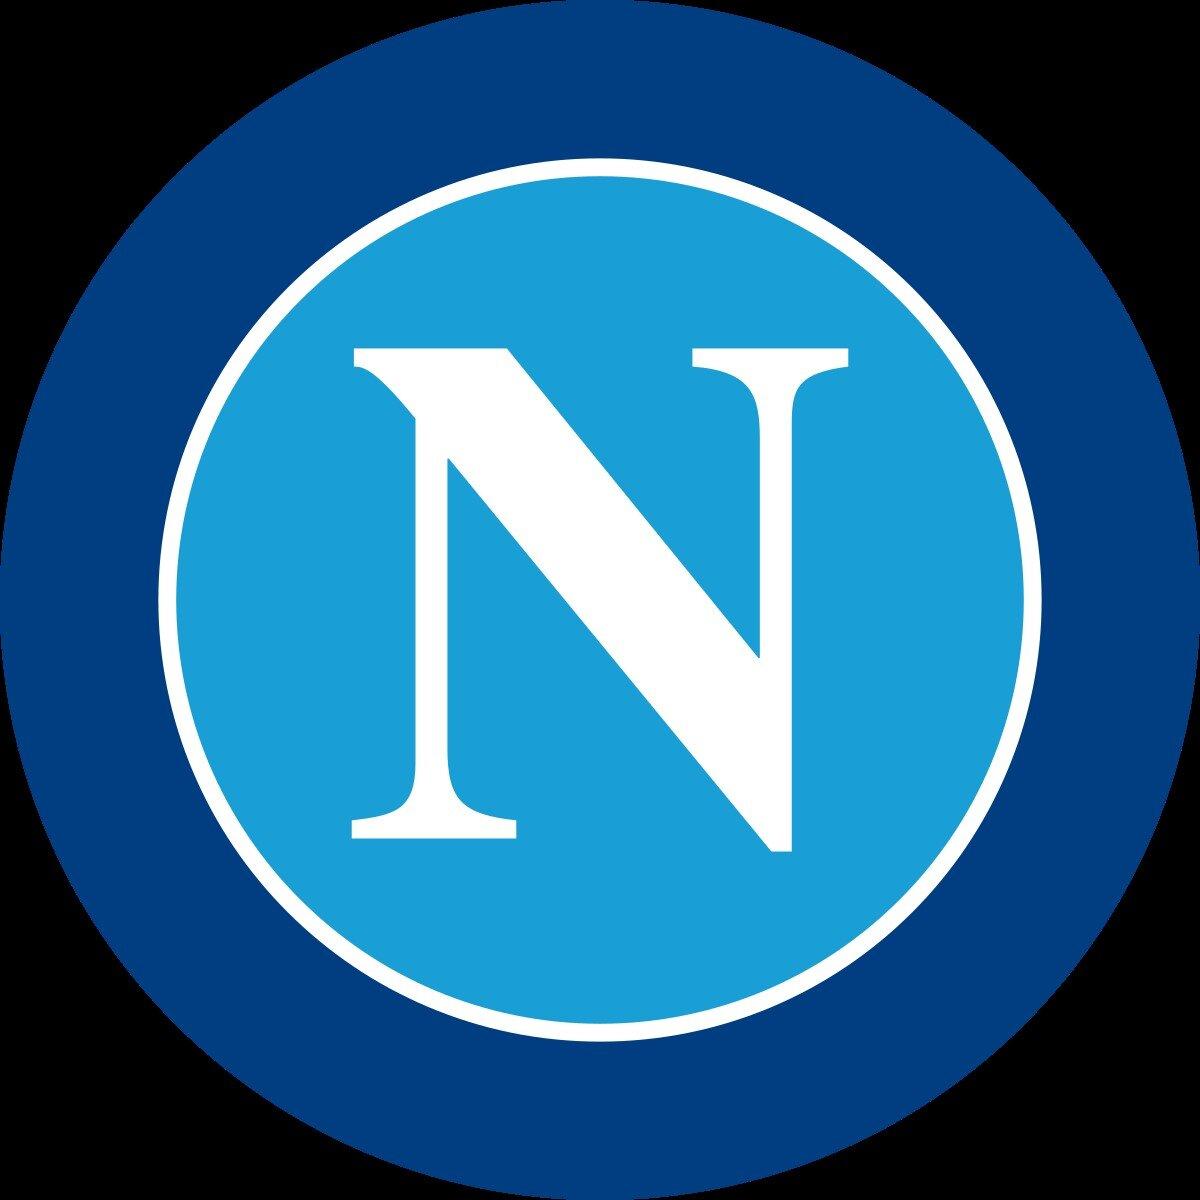 Câu lạc bộ Napoli (Ảnh: Internet)